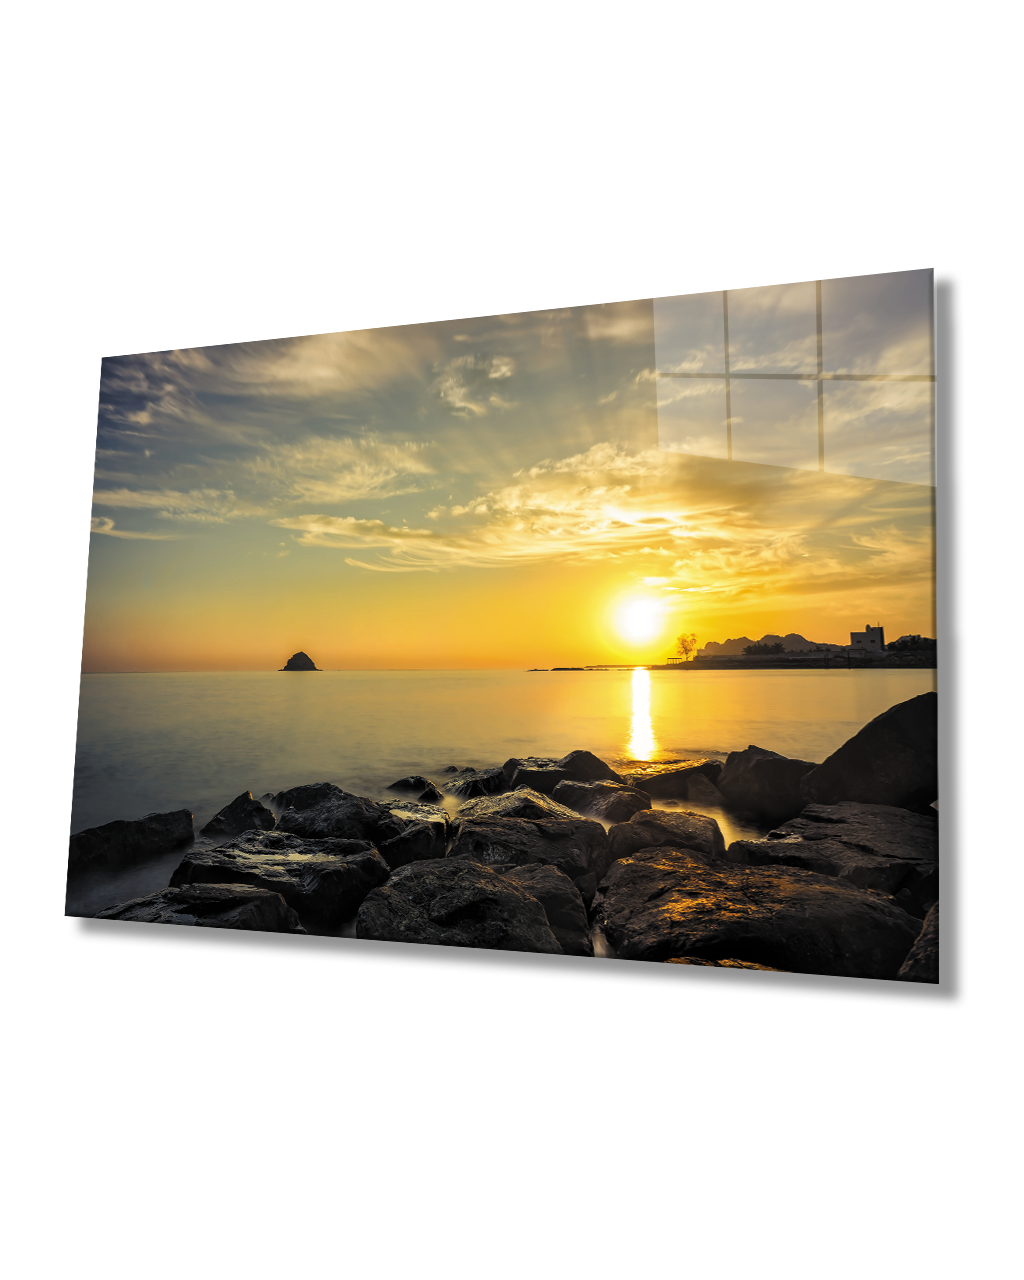 Gün Batımı Deniz Manzaralı Cam Tablo  4mm Dayanıklı Temperli Cam Sunset Sea View Glass Table 4mm Durable Tempered Glass